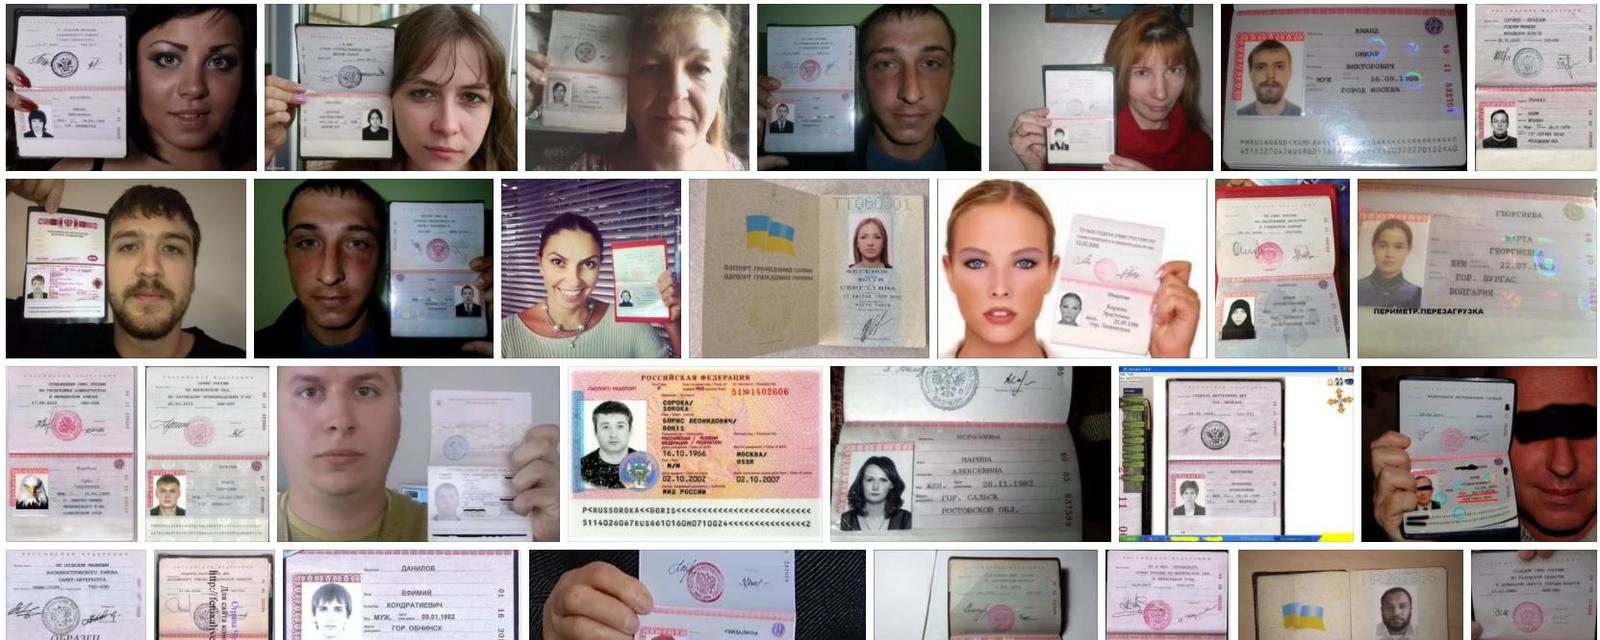 Фотография С Паспортом В Руках Для Верификации